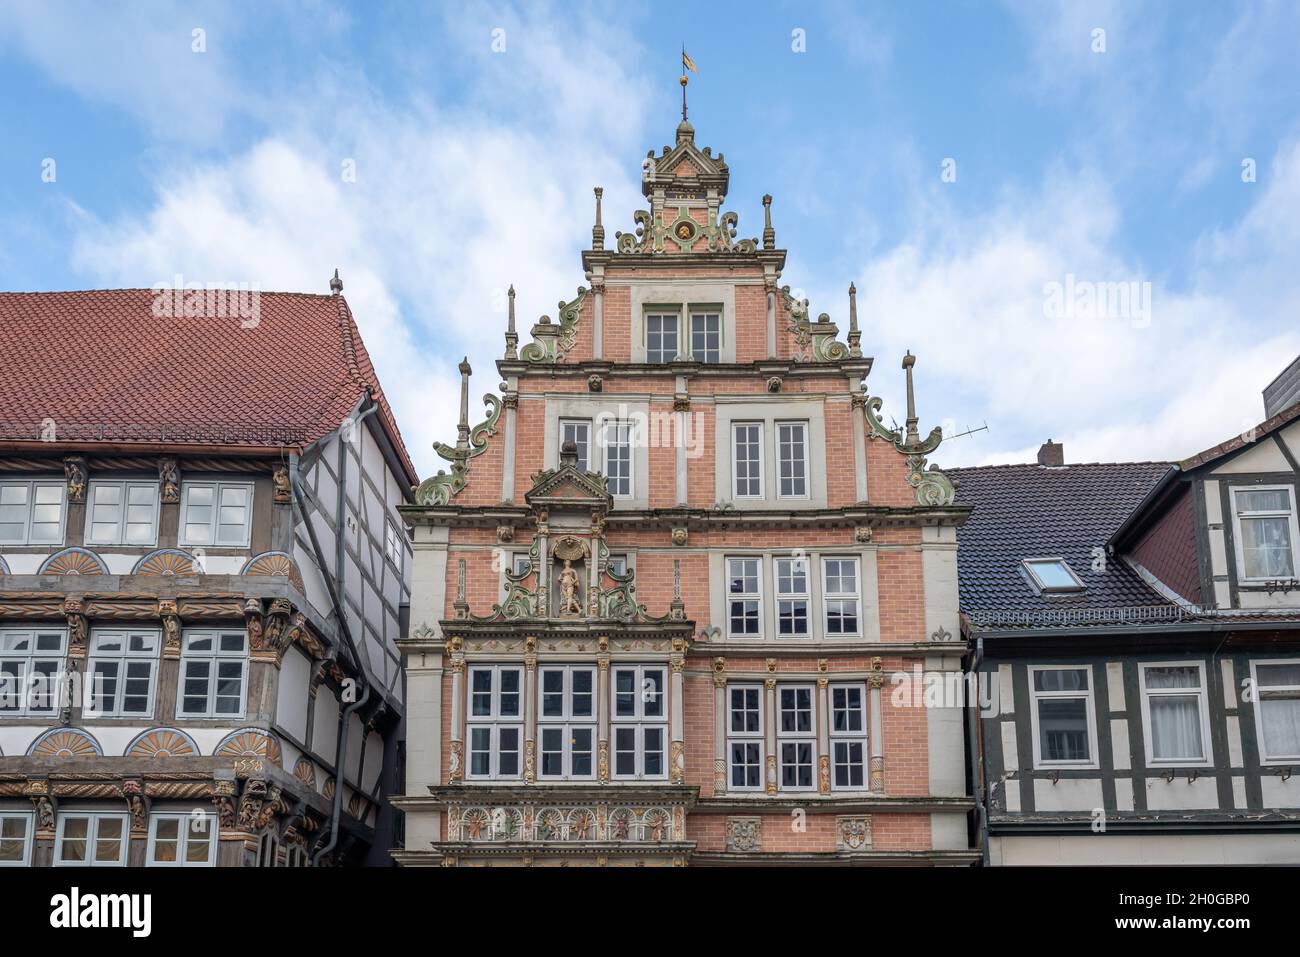 Leisthaus - Haus im Weser Renaissance Stil - Hameln, Niedersachsen, Deutschland Stockfoto